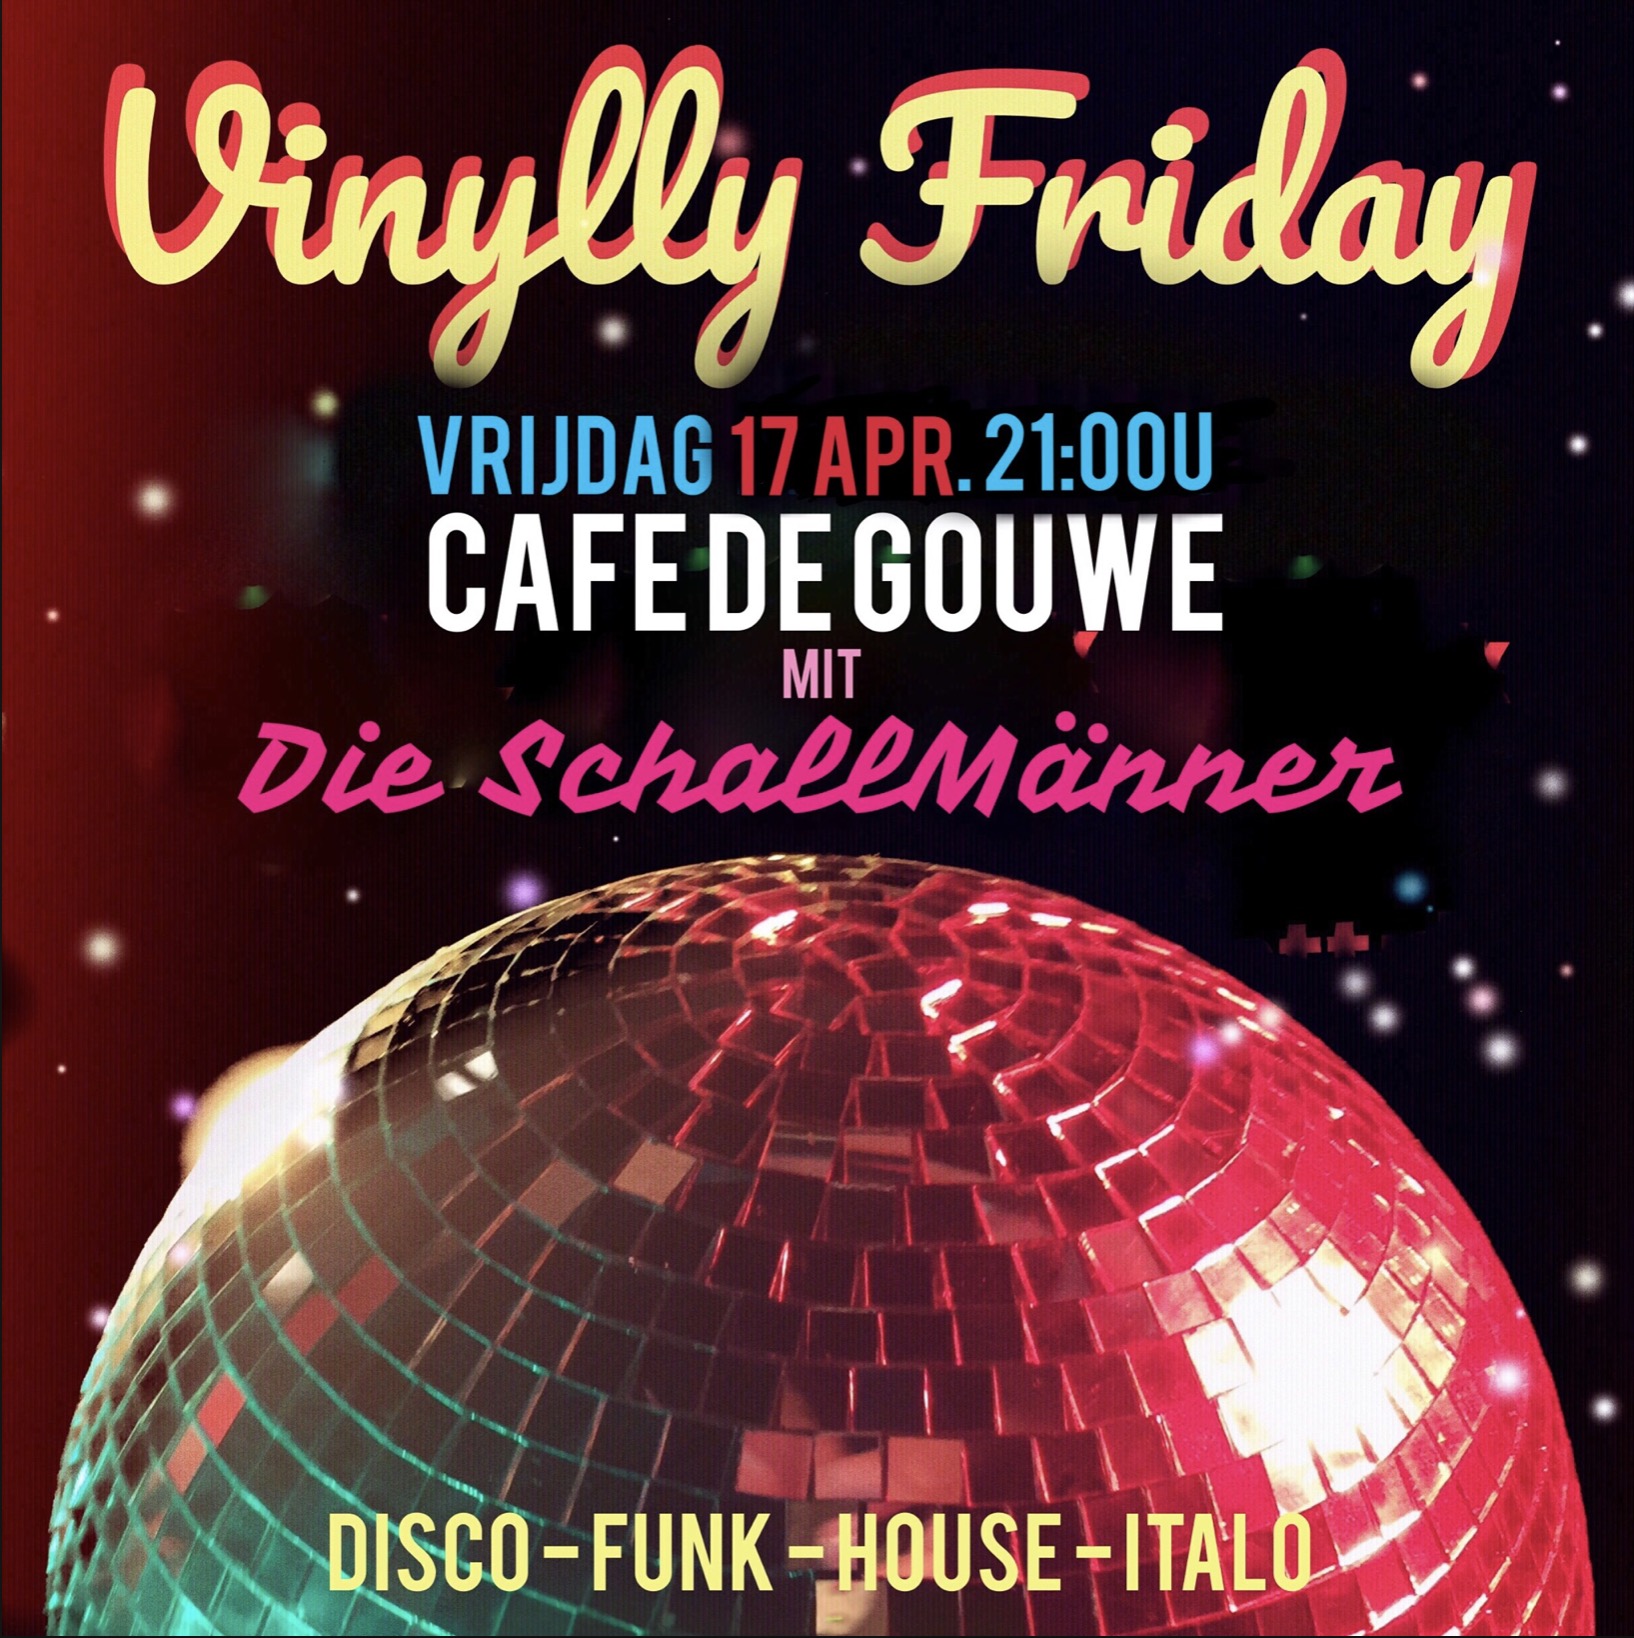 Vinylly Friday @ De Gouwe vervallen